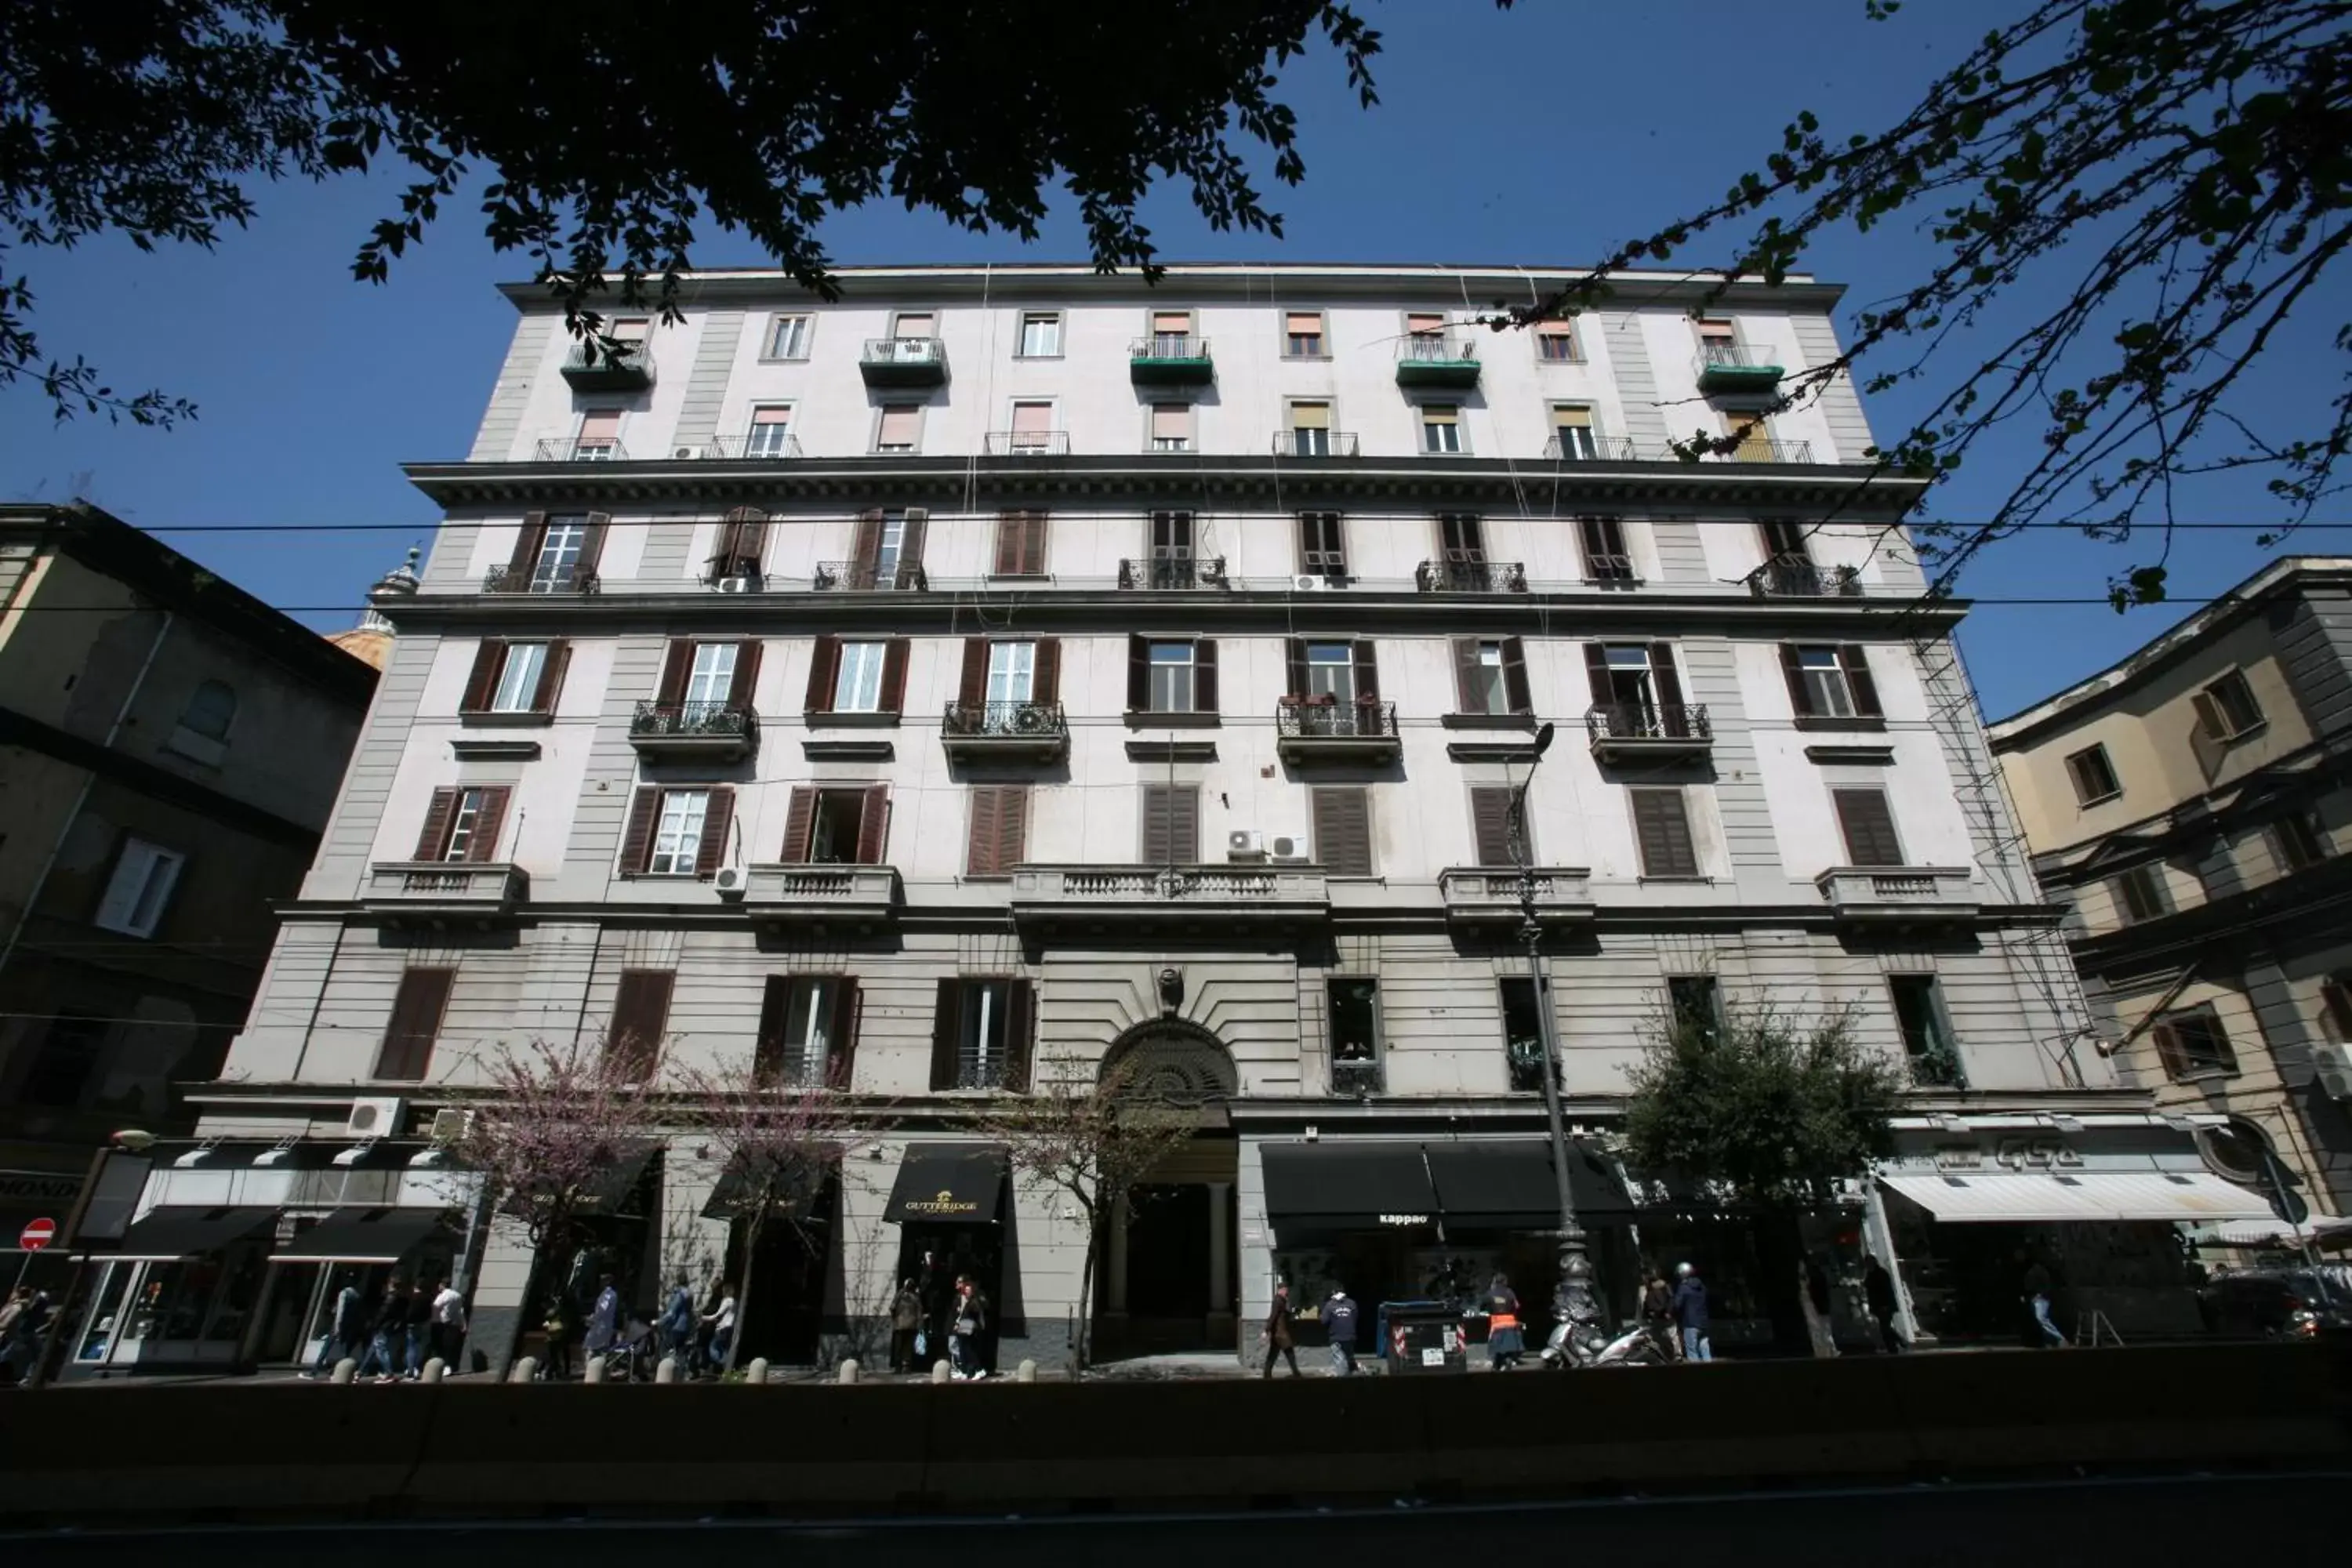 Facade/entrance, Property Building in Napoli Suite